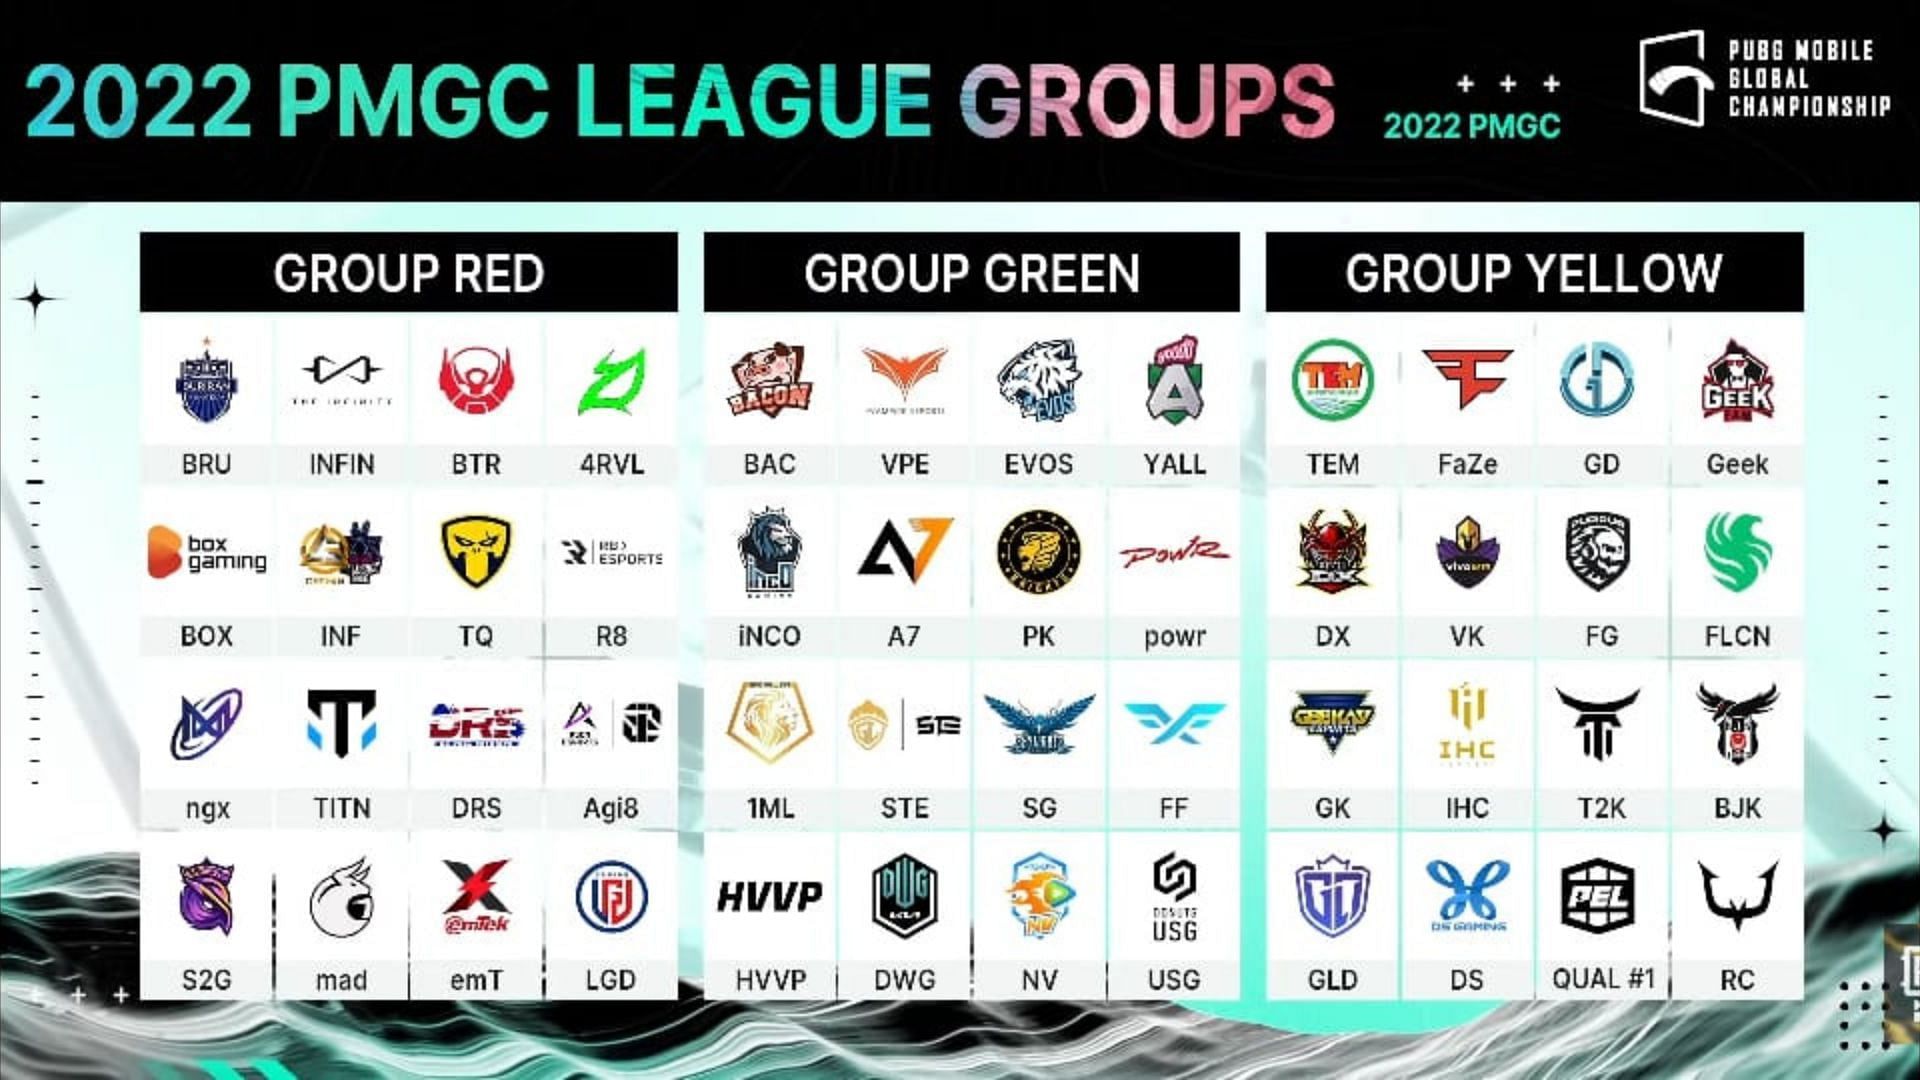 PMGC League Stage Gruppen und Teams (Bild über PUBG Mobile)